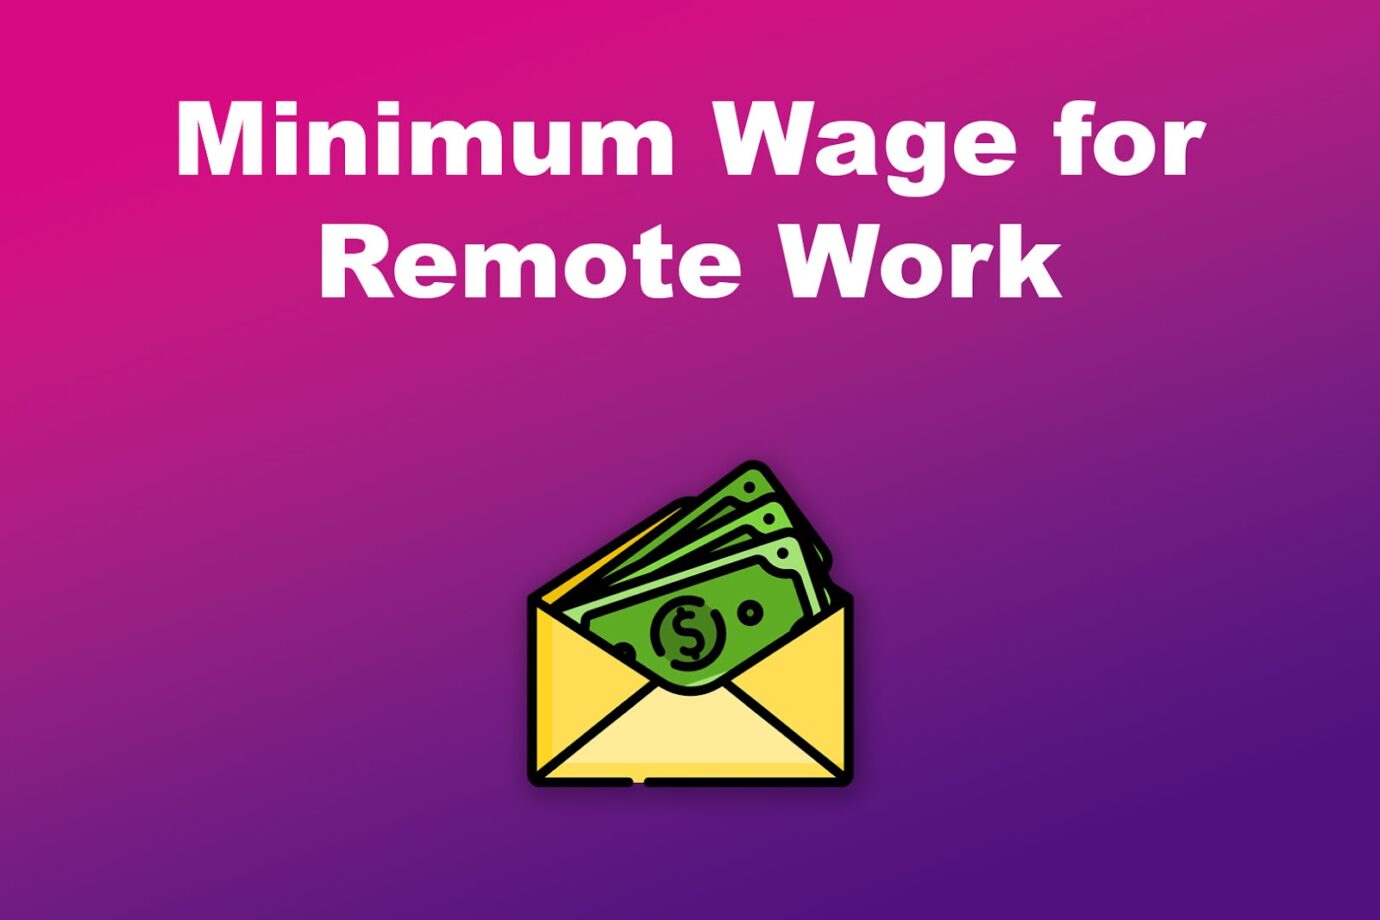 Minimum Wage for Remote Work